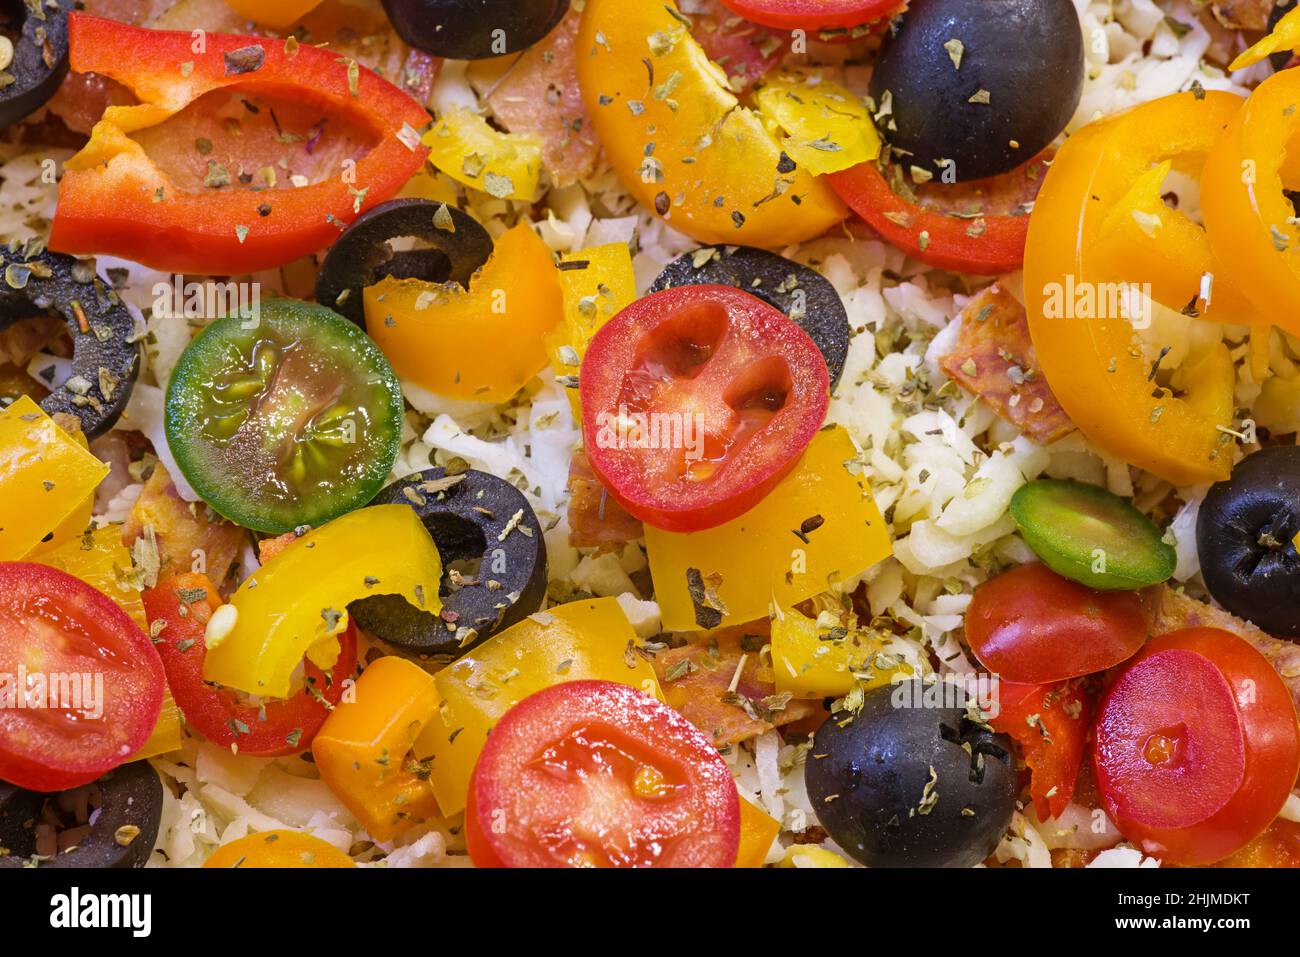 détail d'une pizza maison non cuite avec des poivrons, des olives de tomates, du fromage et des herbes prêtes à cuire Banque D'Images